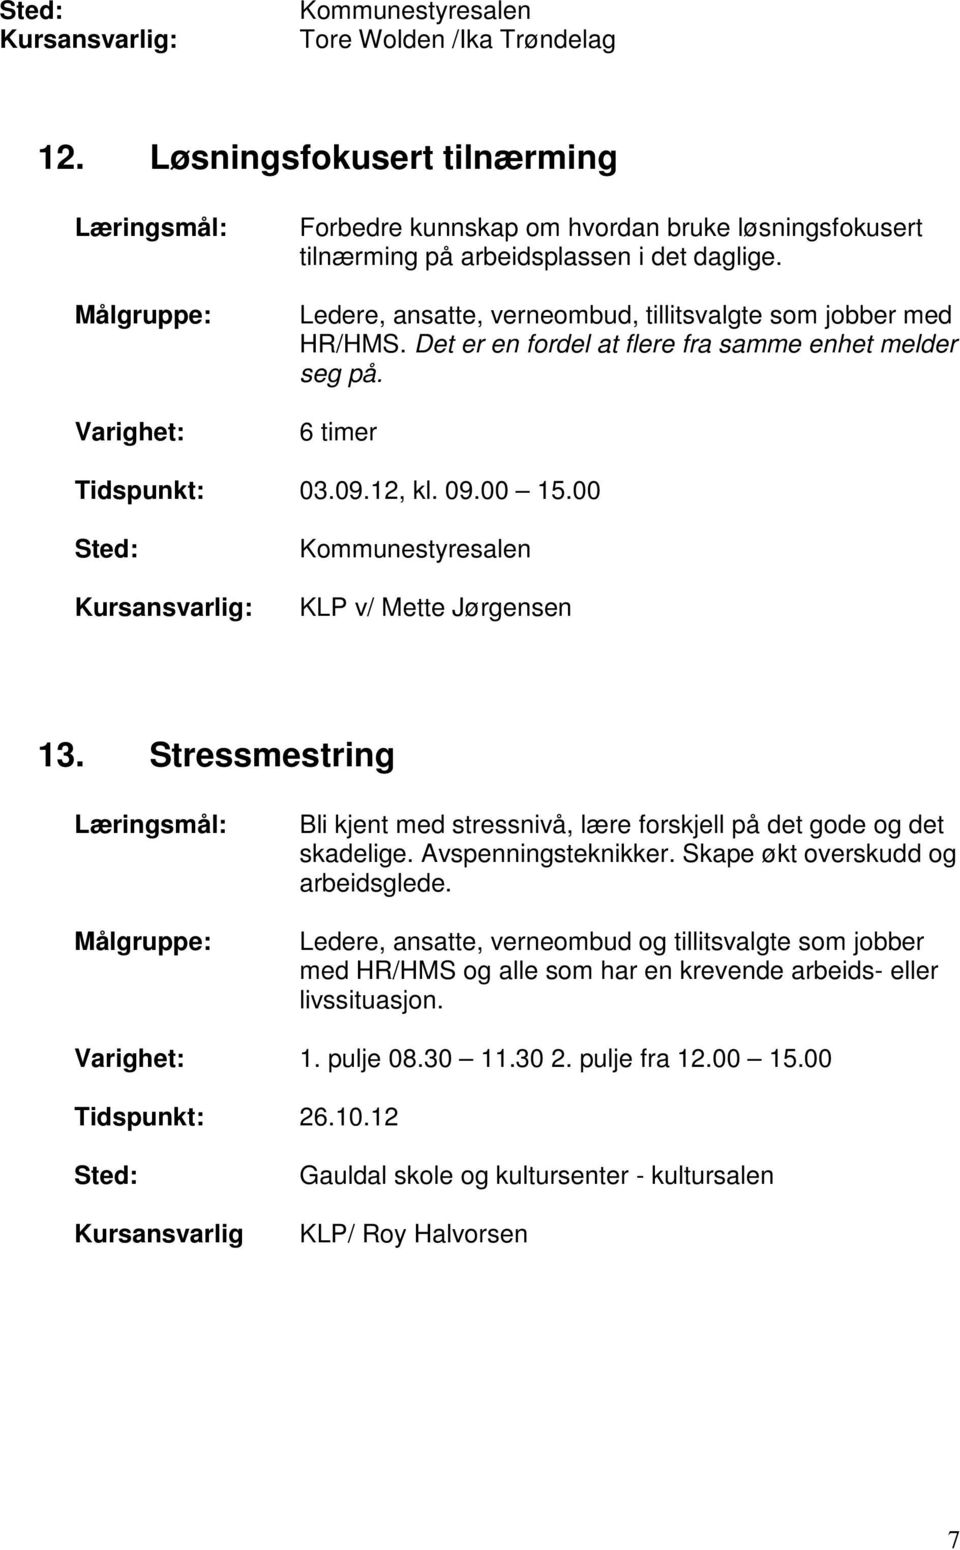 00 Kommunestyresalen KLP v/ Mette Jørgensen 13. Stressmestring Bli kjent med stressnivå, lære forskjell på det gode og det skadelige. Avspenningsteknikker. Skape økt overskudd og arbeidsglede.